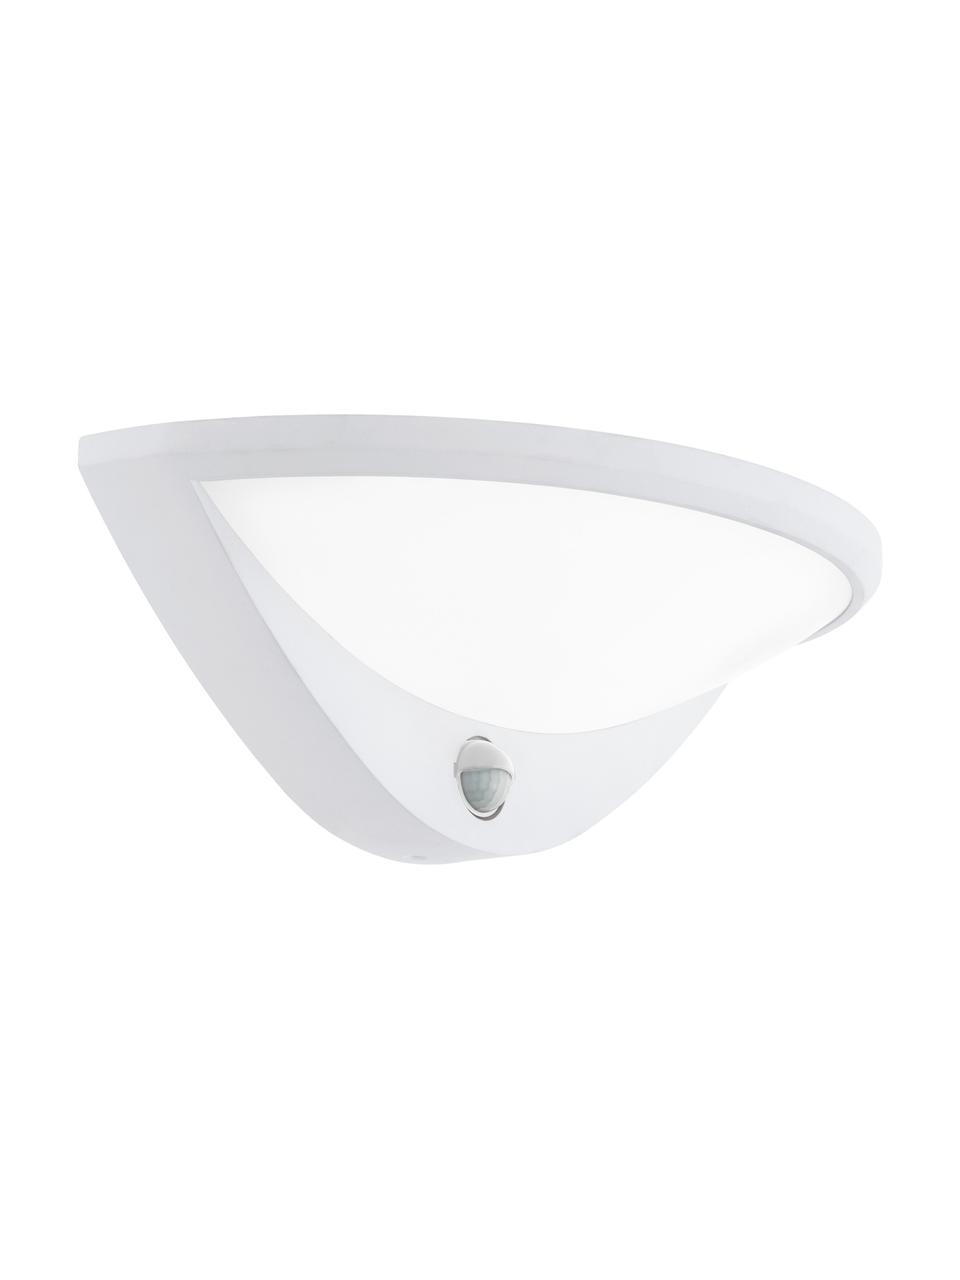 Aplique LED de exterior Belcreda, Estructura: aluminio, Pantalla: plástico, Blanco, An 33 x Al 13 cm